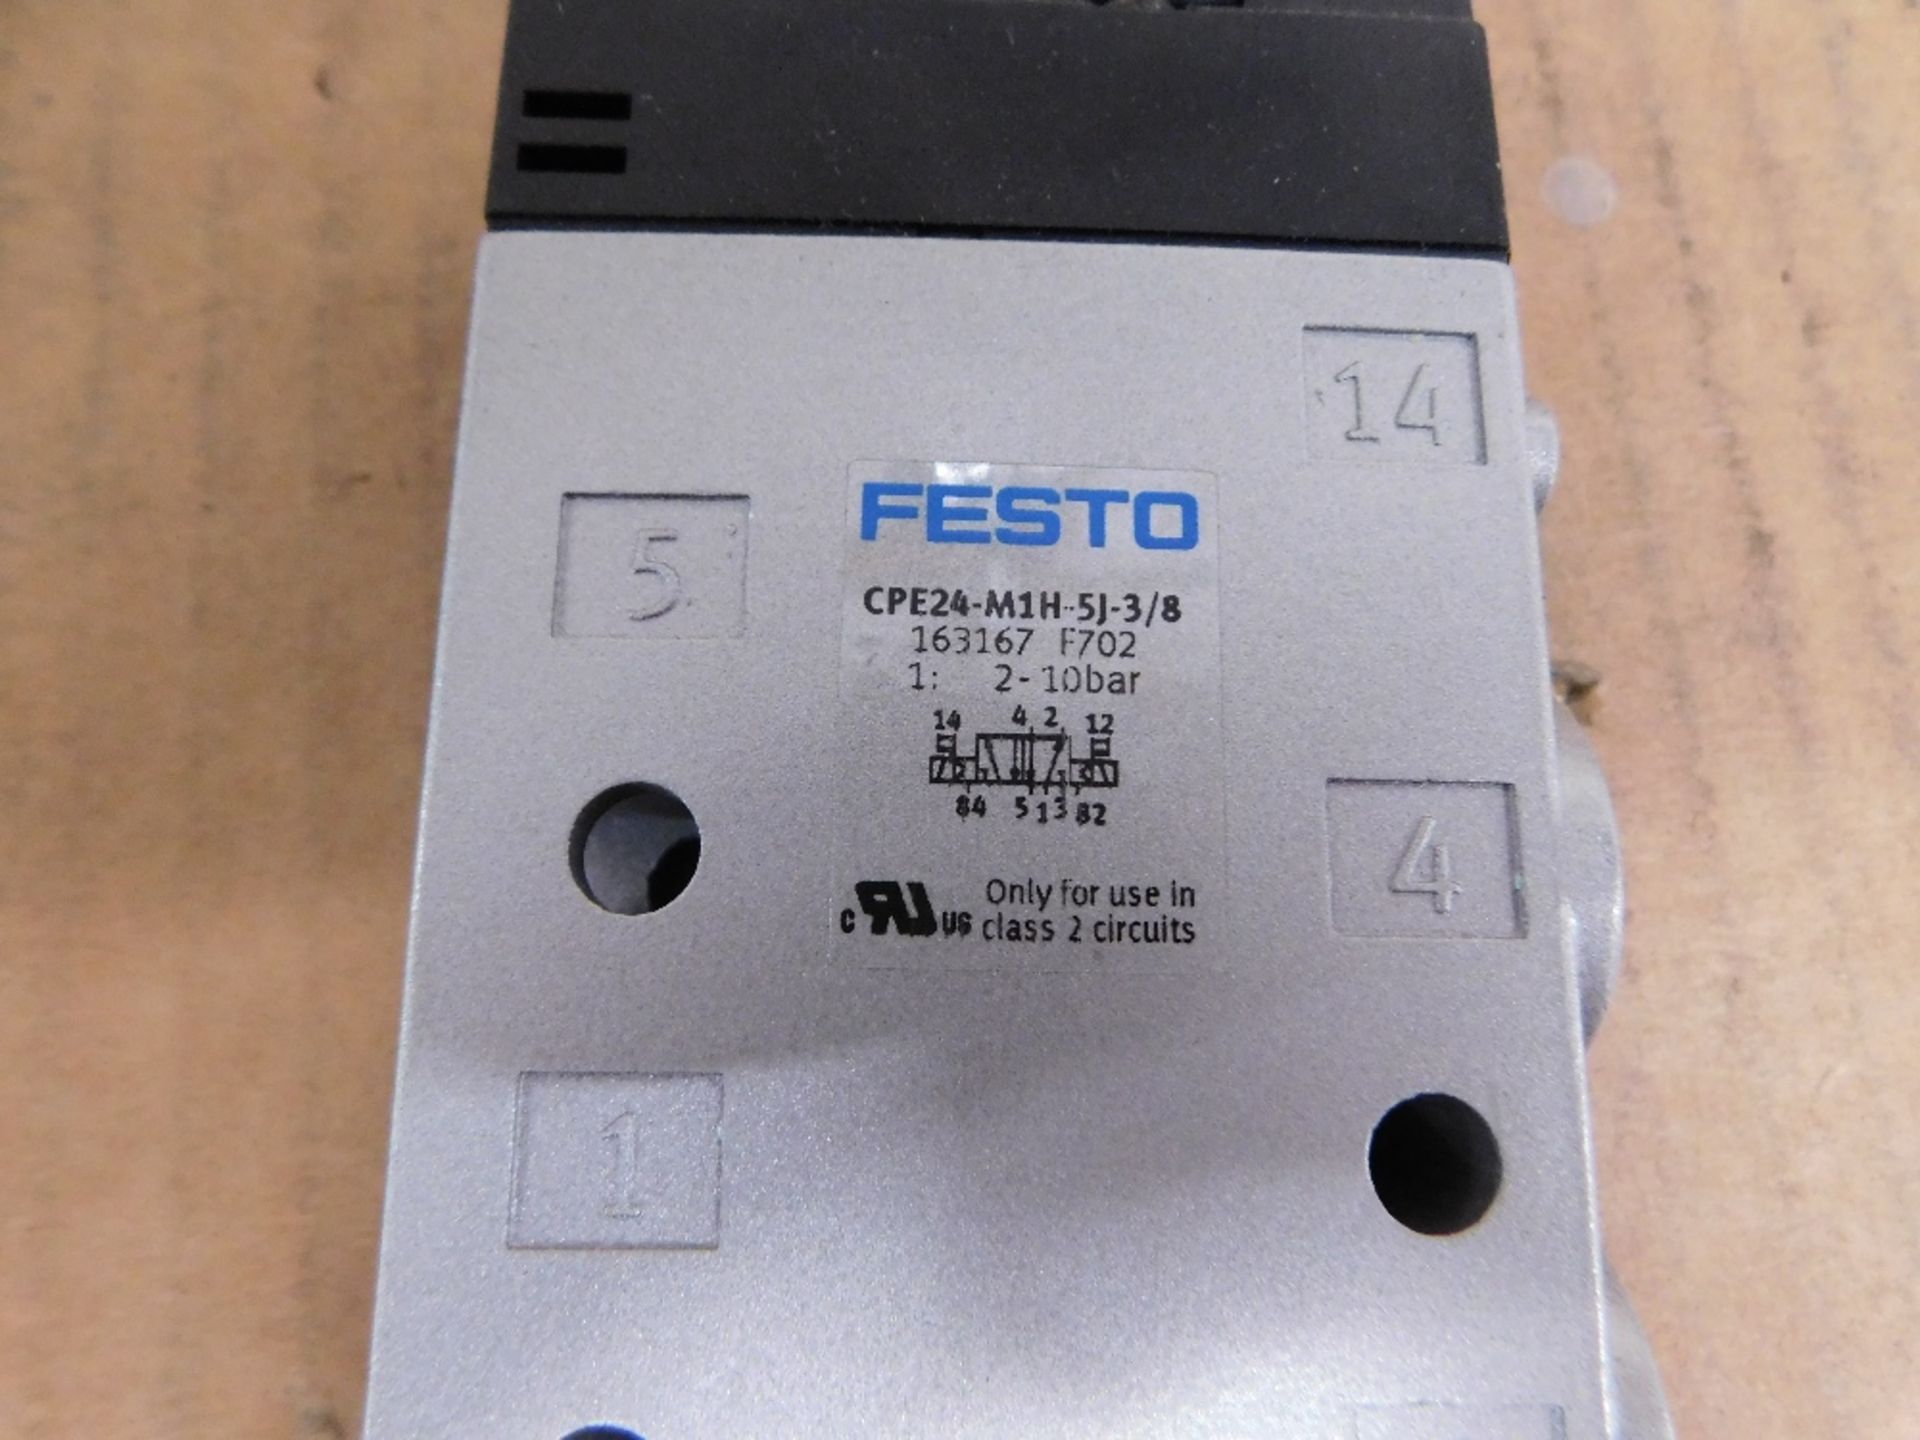 1x Festo Unused Surplus CPE24-M1H-5J-3/8 Misc. Valves Solenoid 24VDC 1.5W - Image 4 of 4